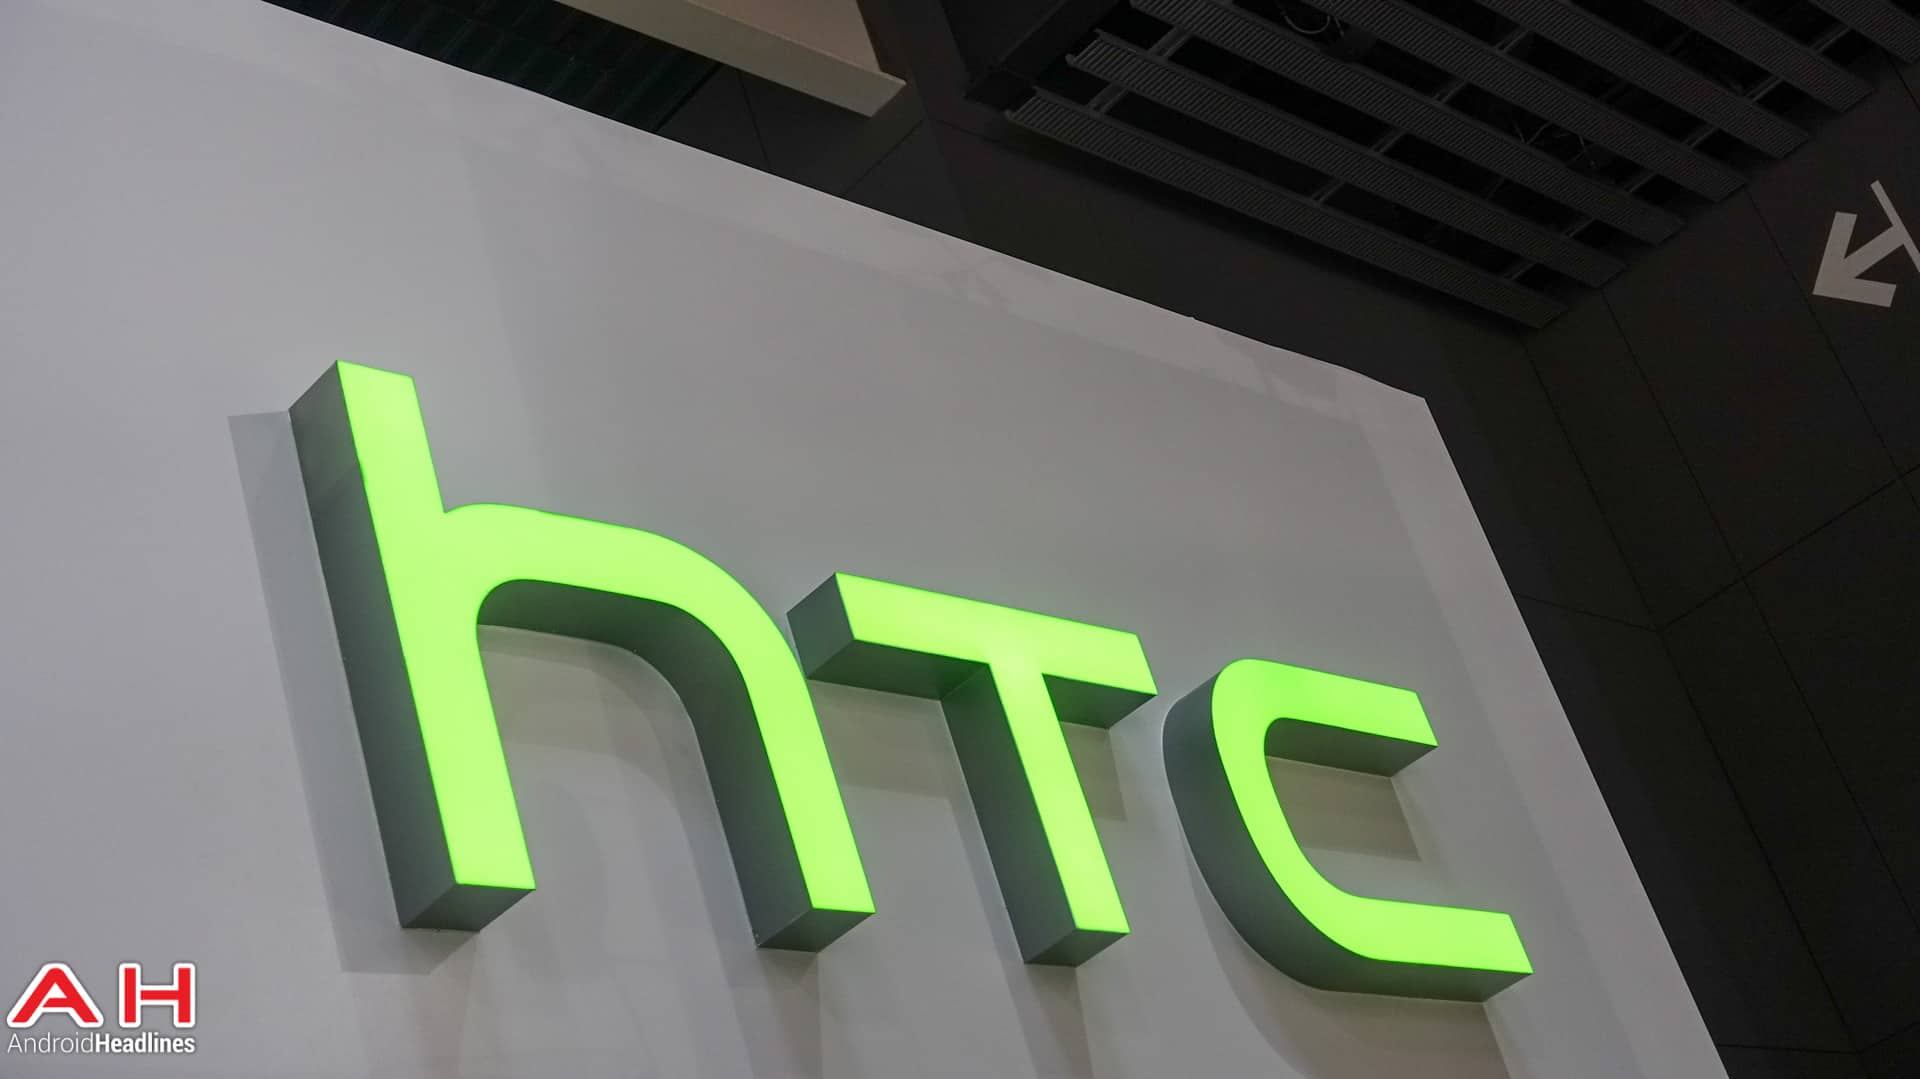 HTC-Logo-AH1